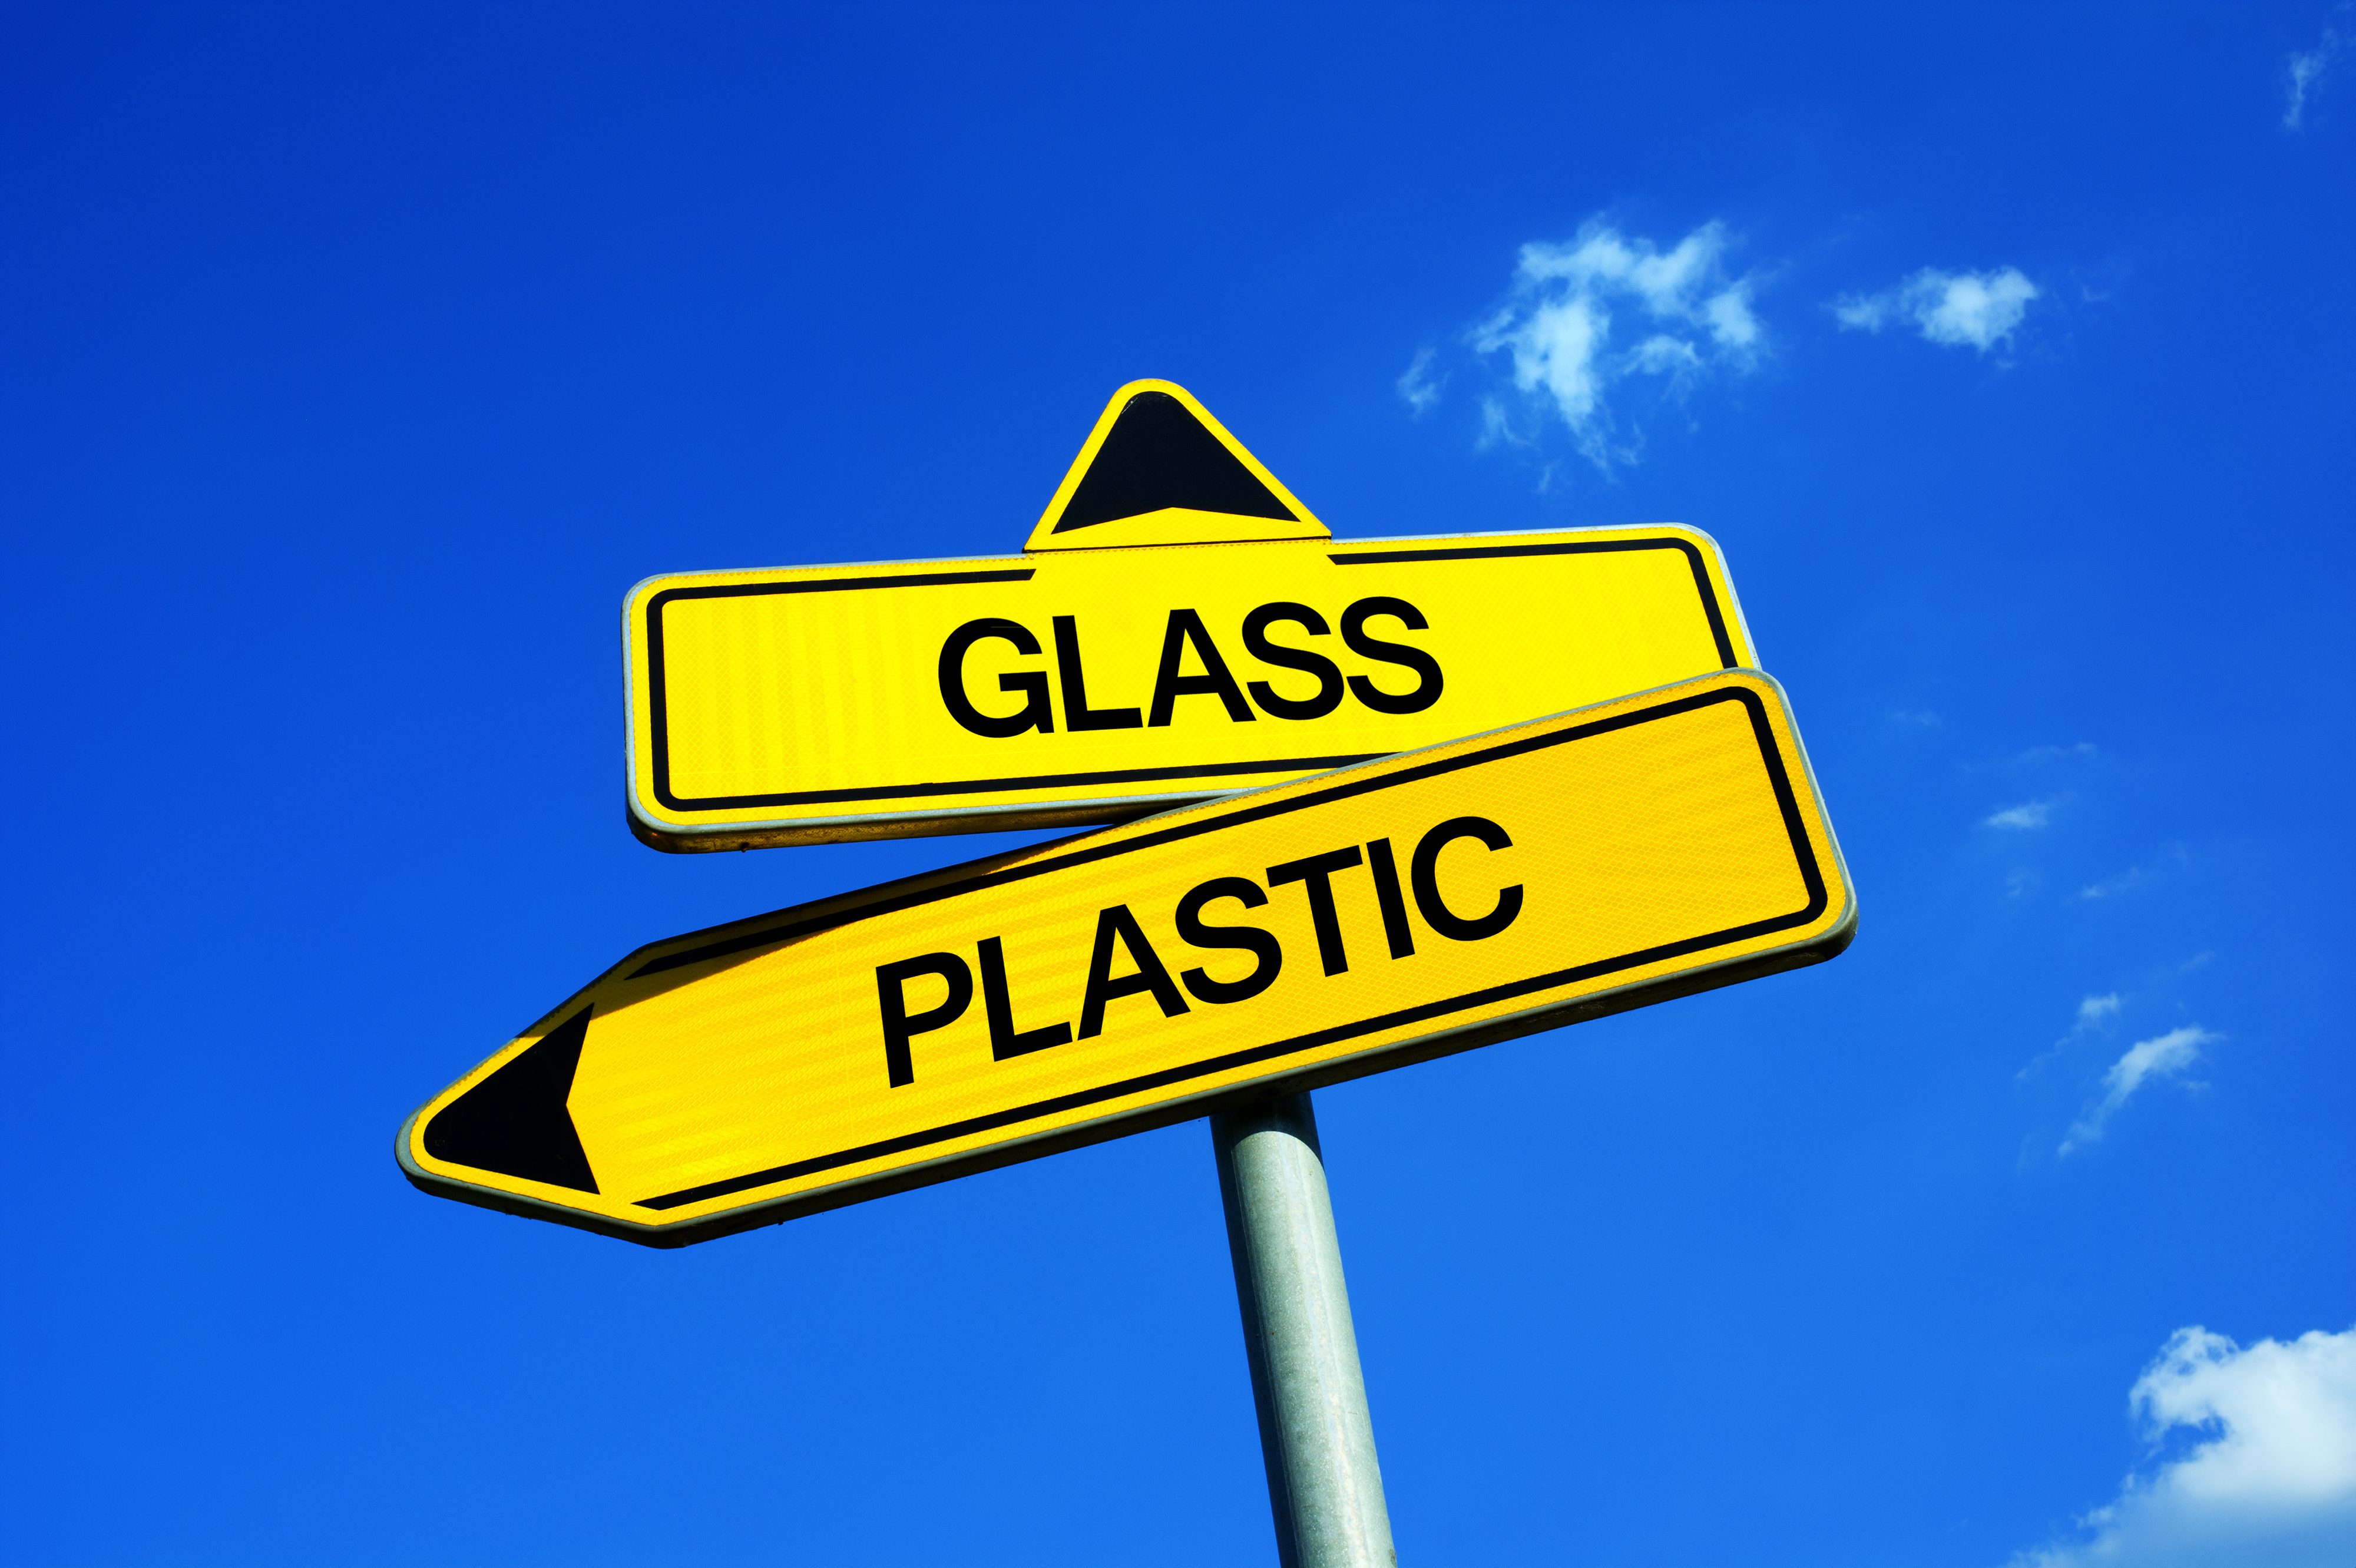 Plastic vs Glass